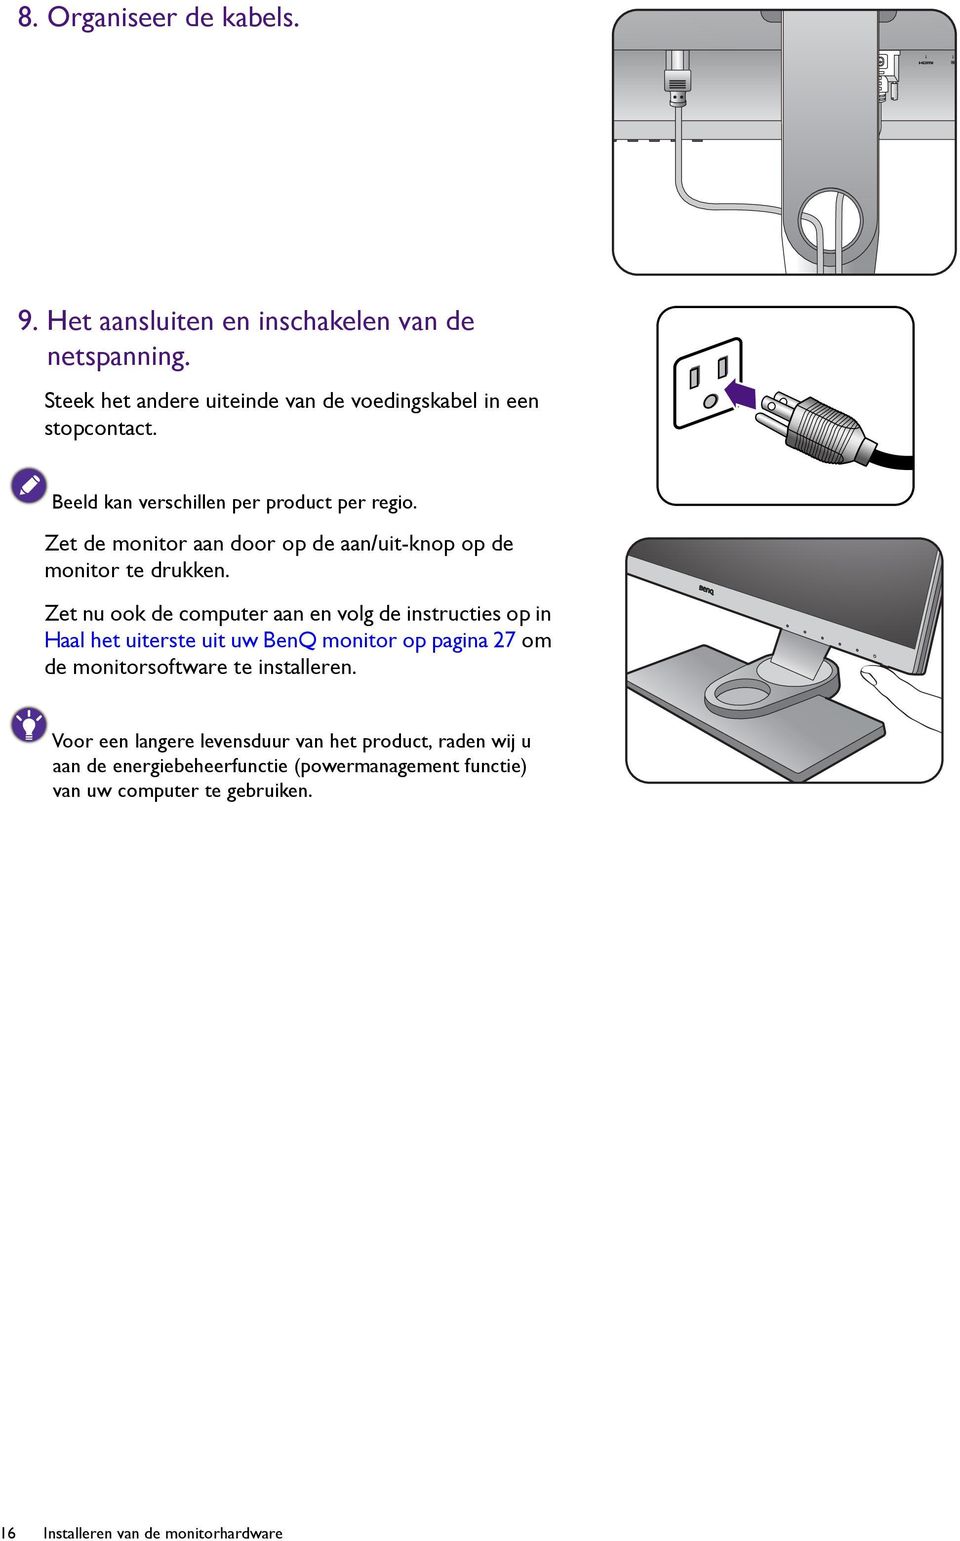 Zet nu ook de computer aan en volg de instructies op in Haal het uiterste uit uw BenQ monitor op pagina 27 om de monitorsoftware te installeren.